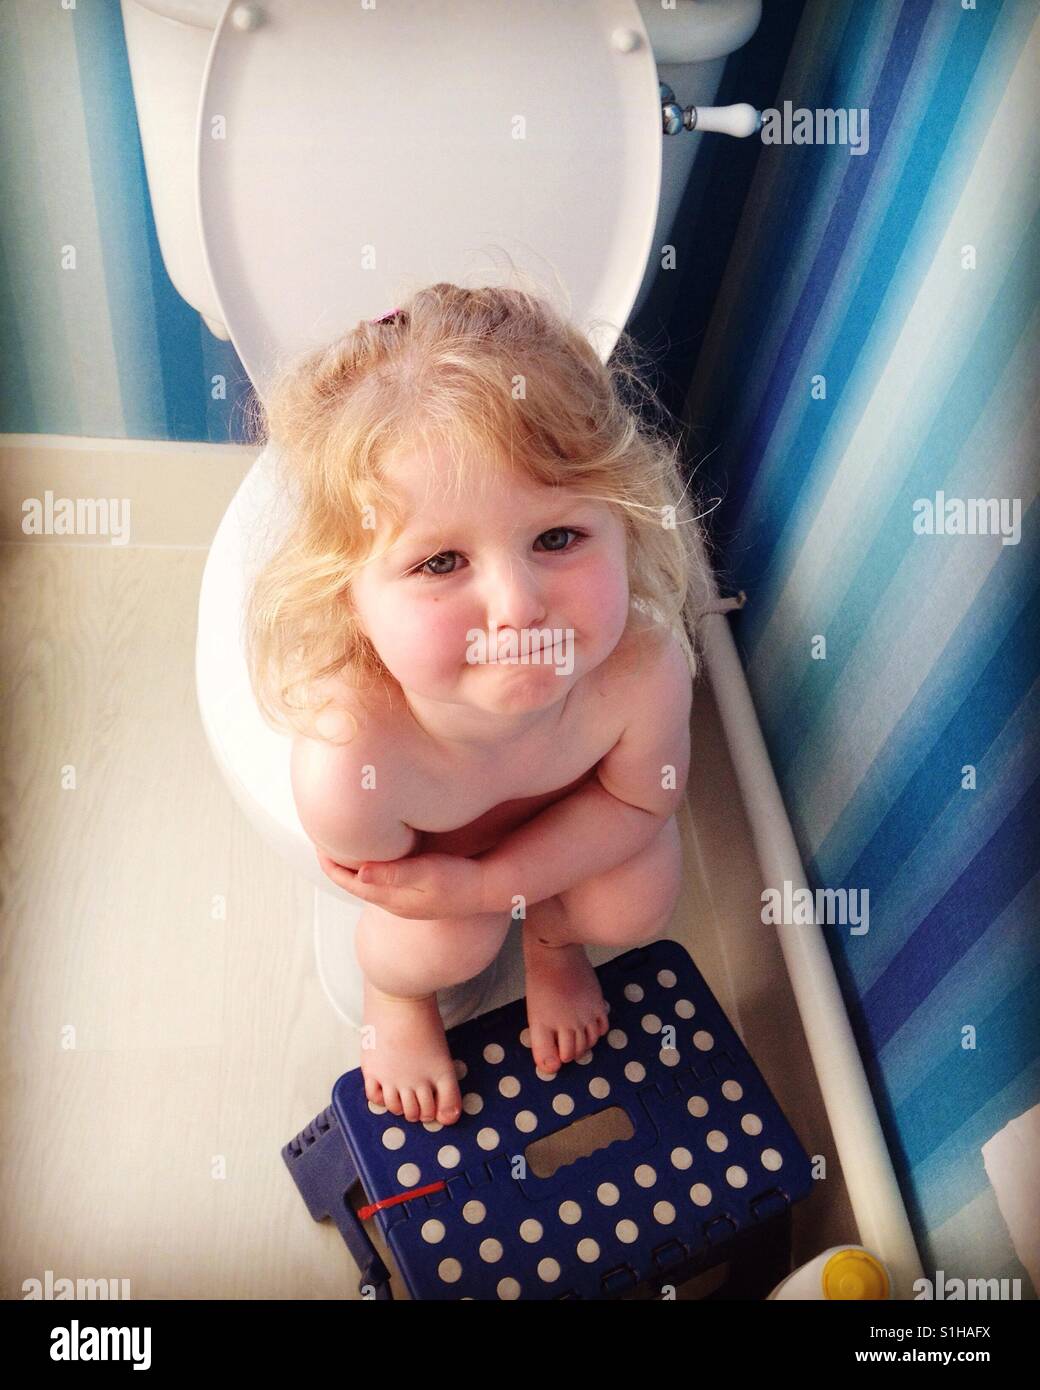 Il Toddler bambino kid va al bagno come parte dei servizi igienici della formazione. Foto Stock